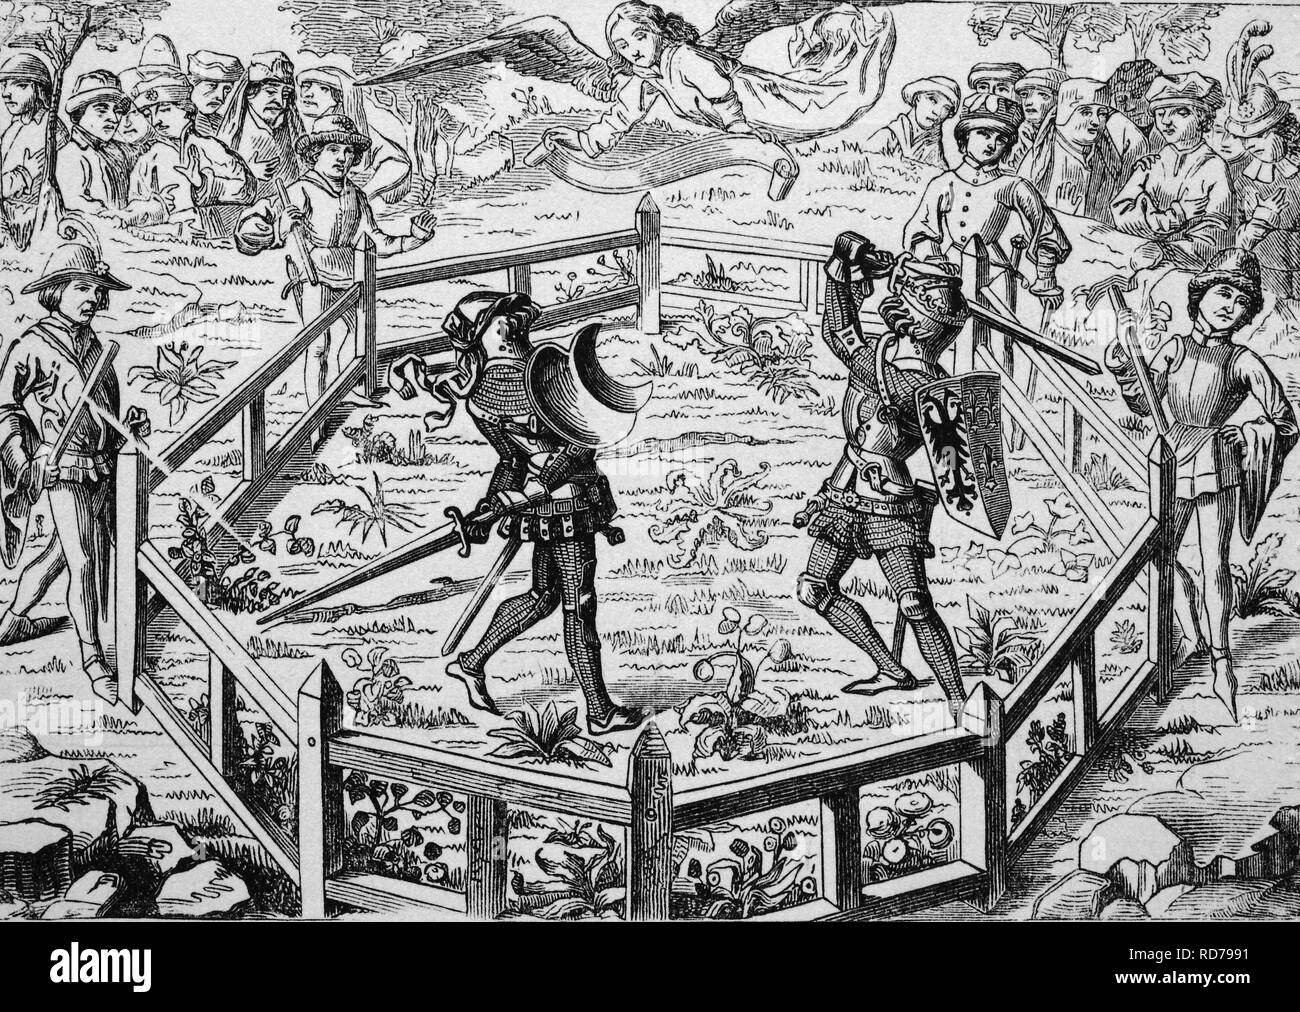 La lutte contre les chevaliers au Moyen-Âge, gravure sur bois, 1870 historique Banque D'Images